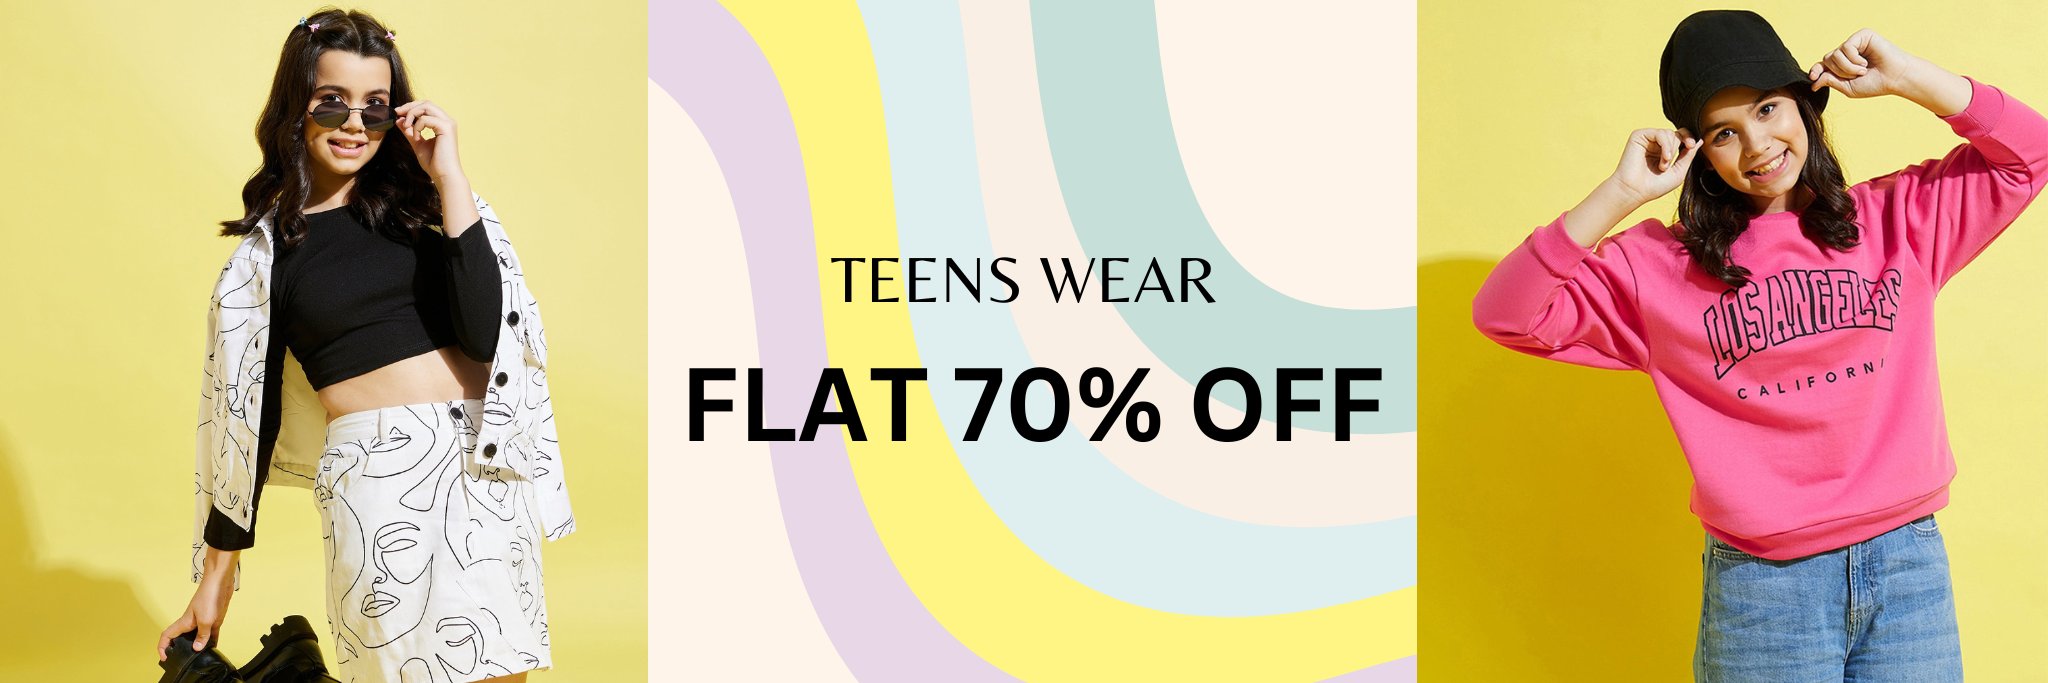 Teens Wear - Flat 70% Off